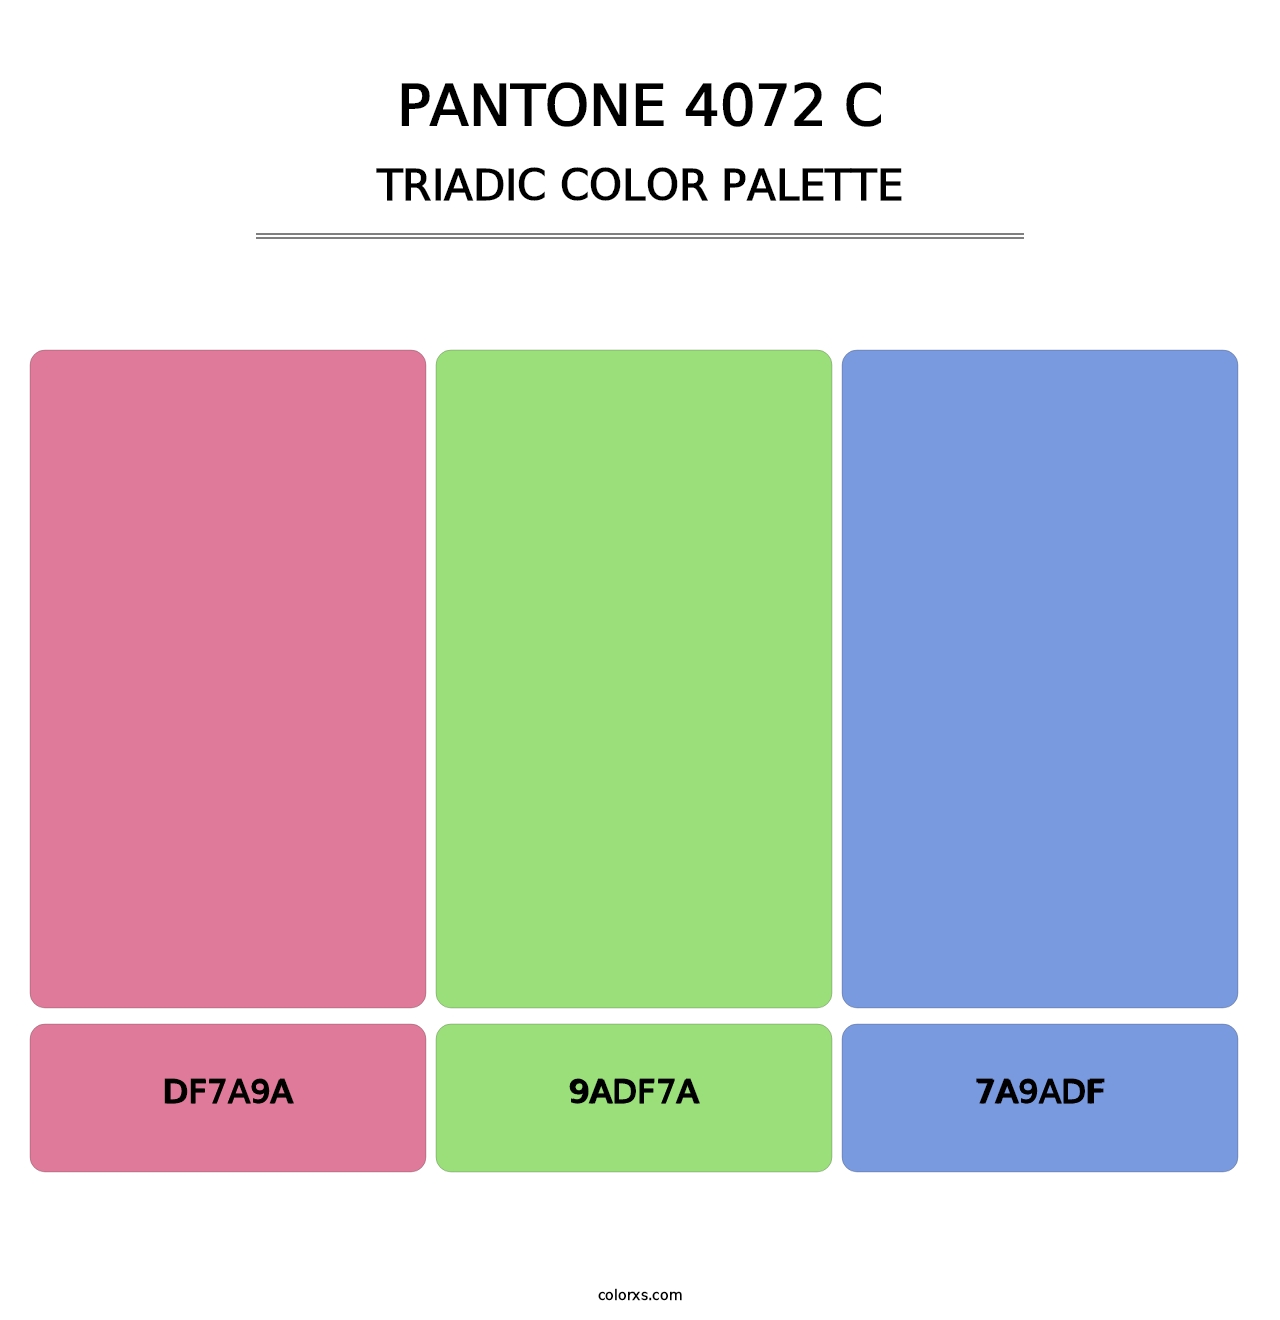 PANTONE 4072 C - Triadic Color Palette